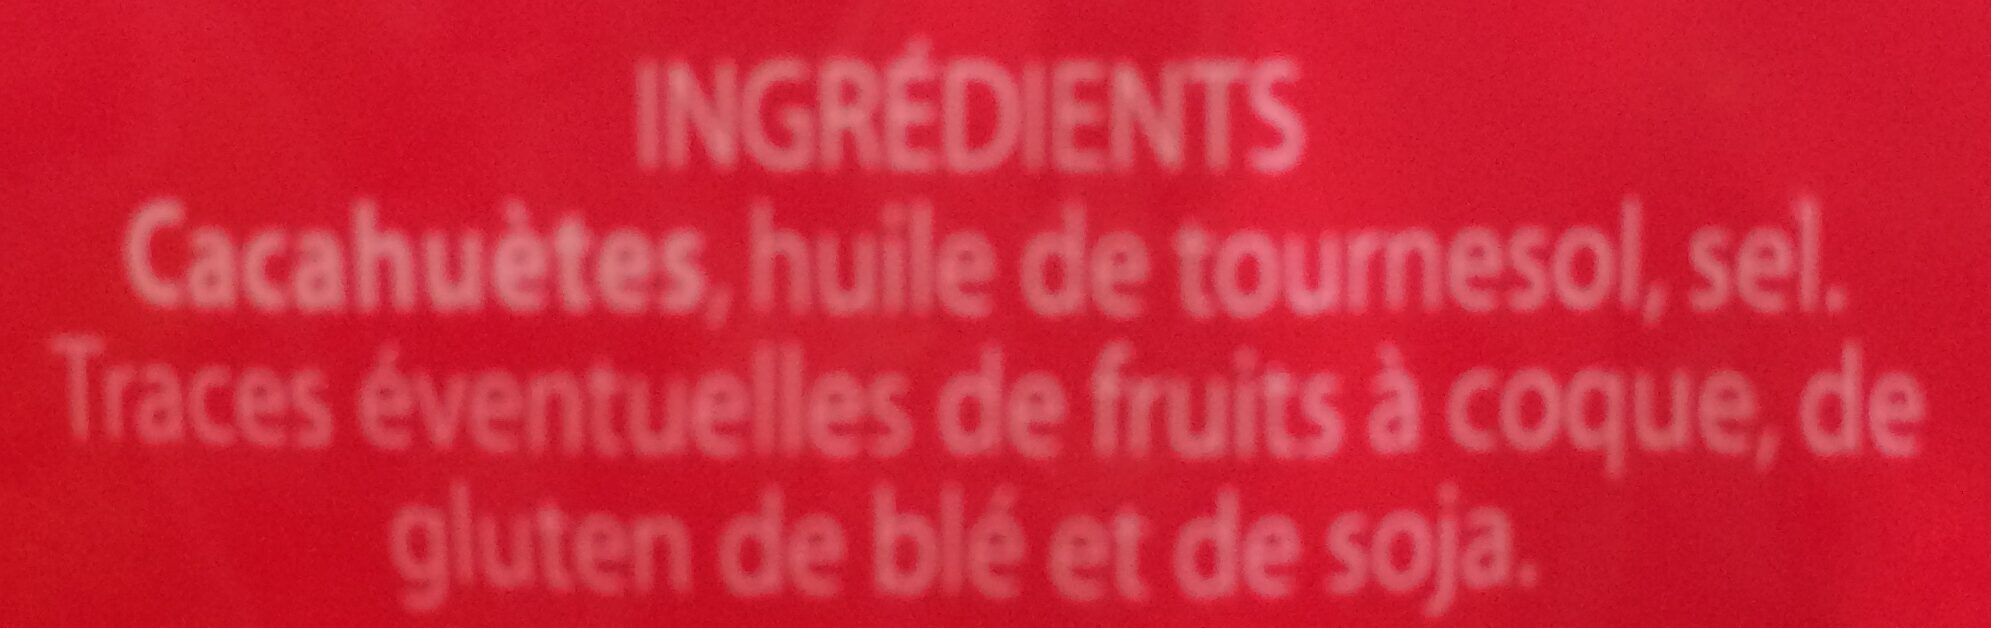 Cacahuetes grillees salees - Ingrediënten - fr